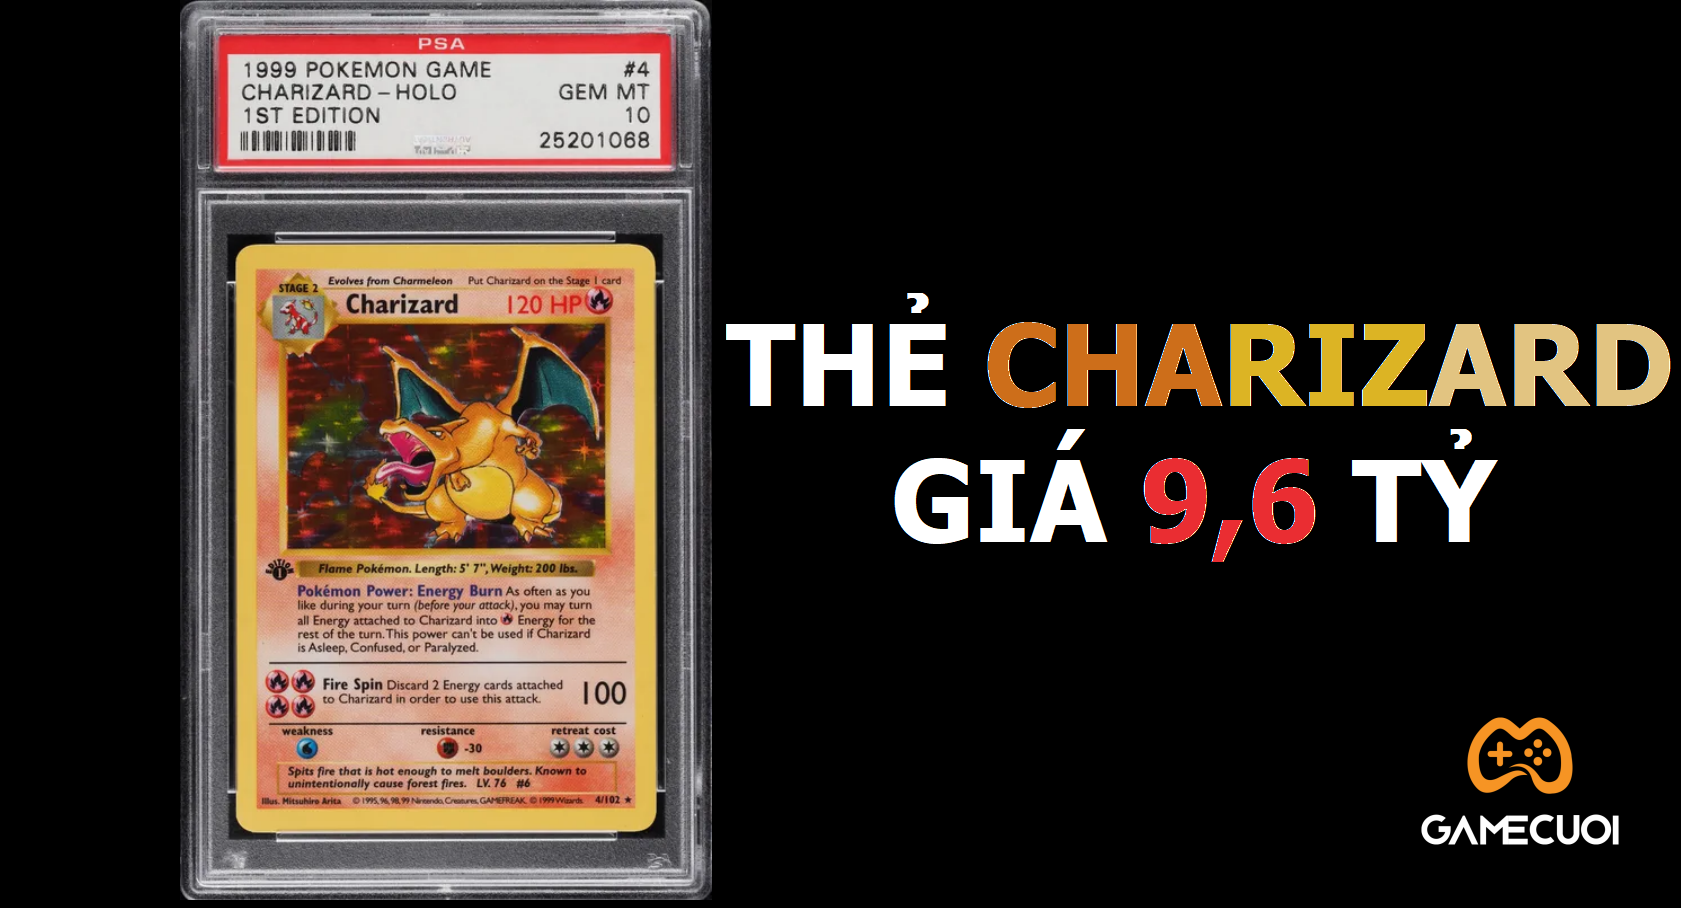 Thẻ Pokémon Charizard lập kỷ lục mới với giá bán 9,6 tỷ đồng